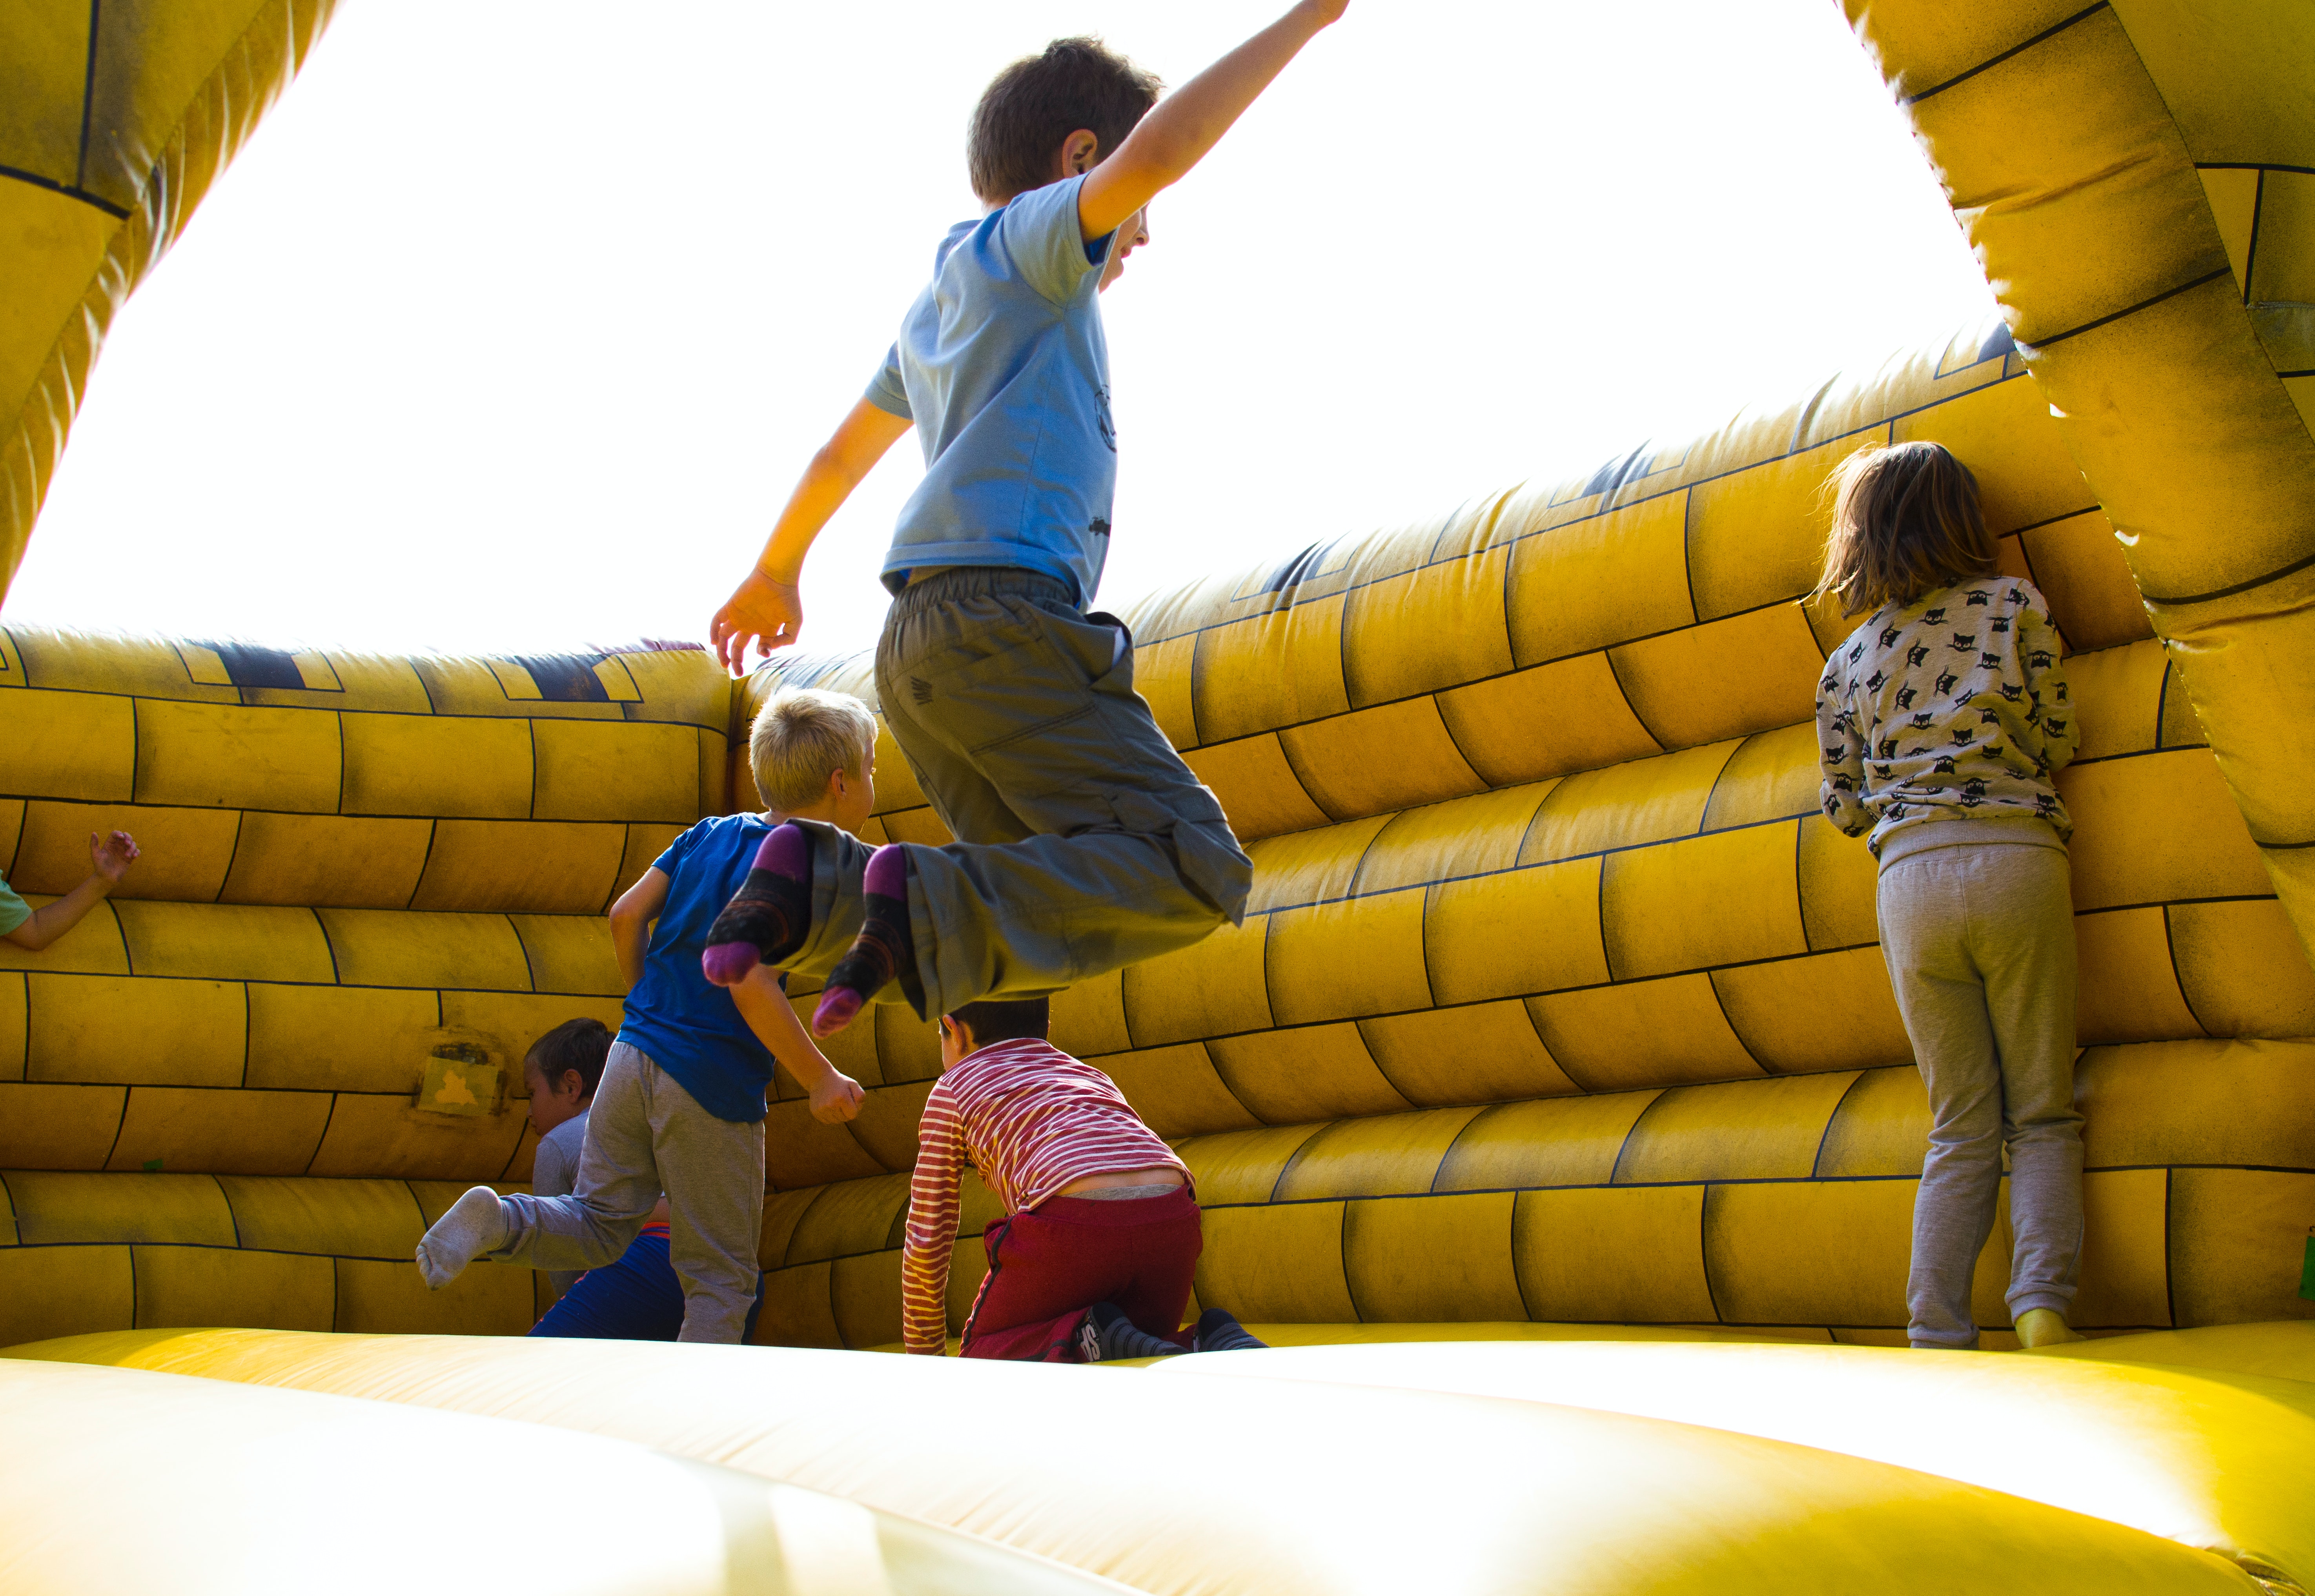 Château trampoline : la structure gonflable préférée des enfants